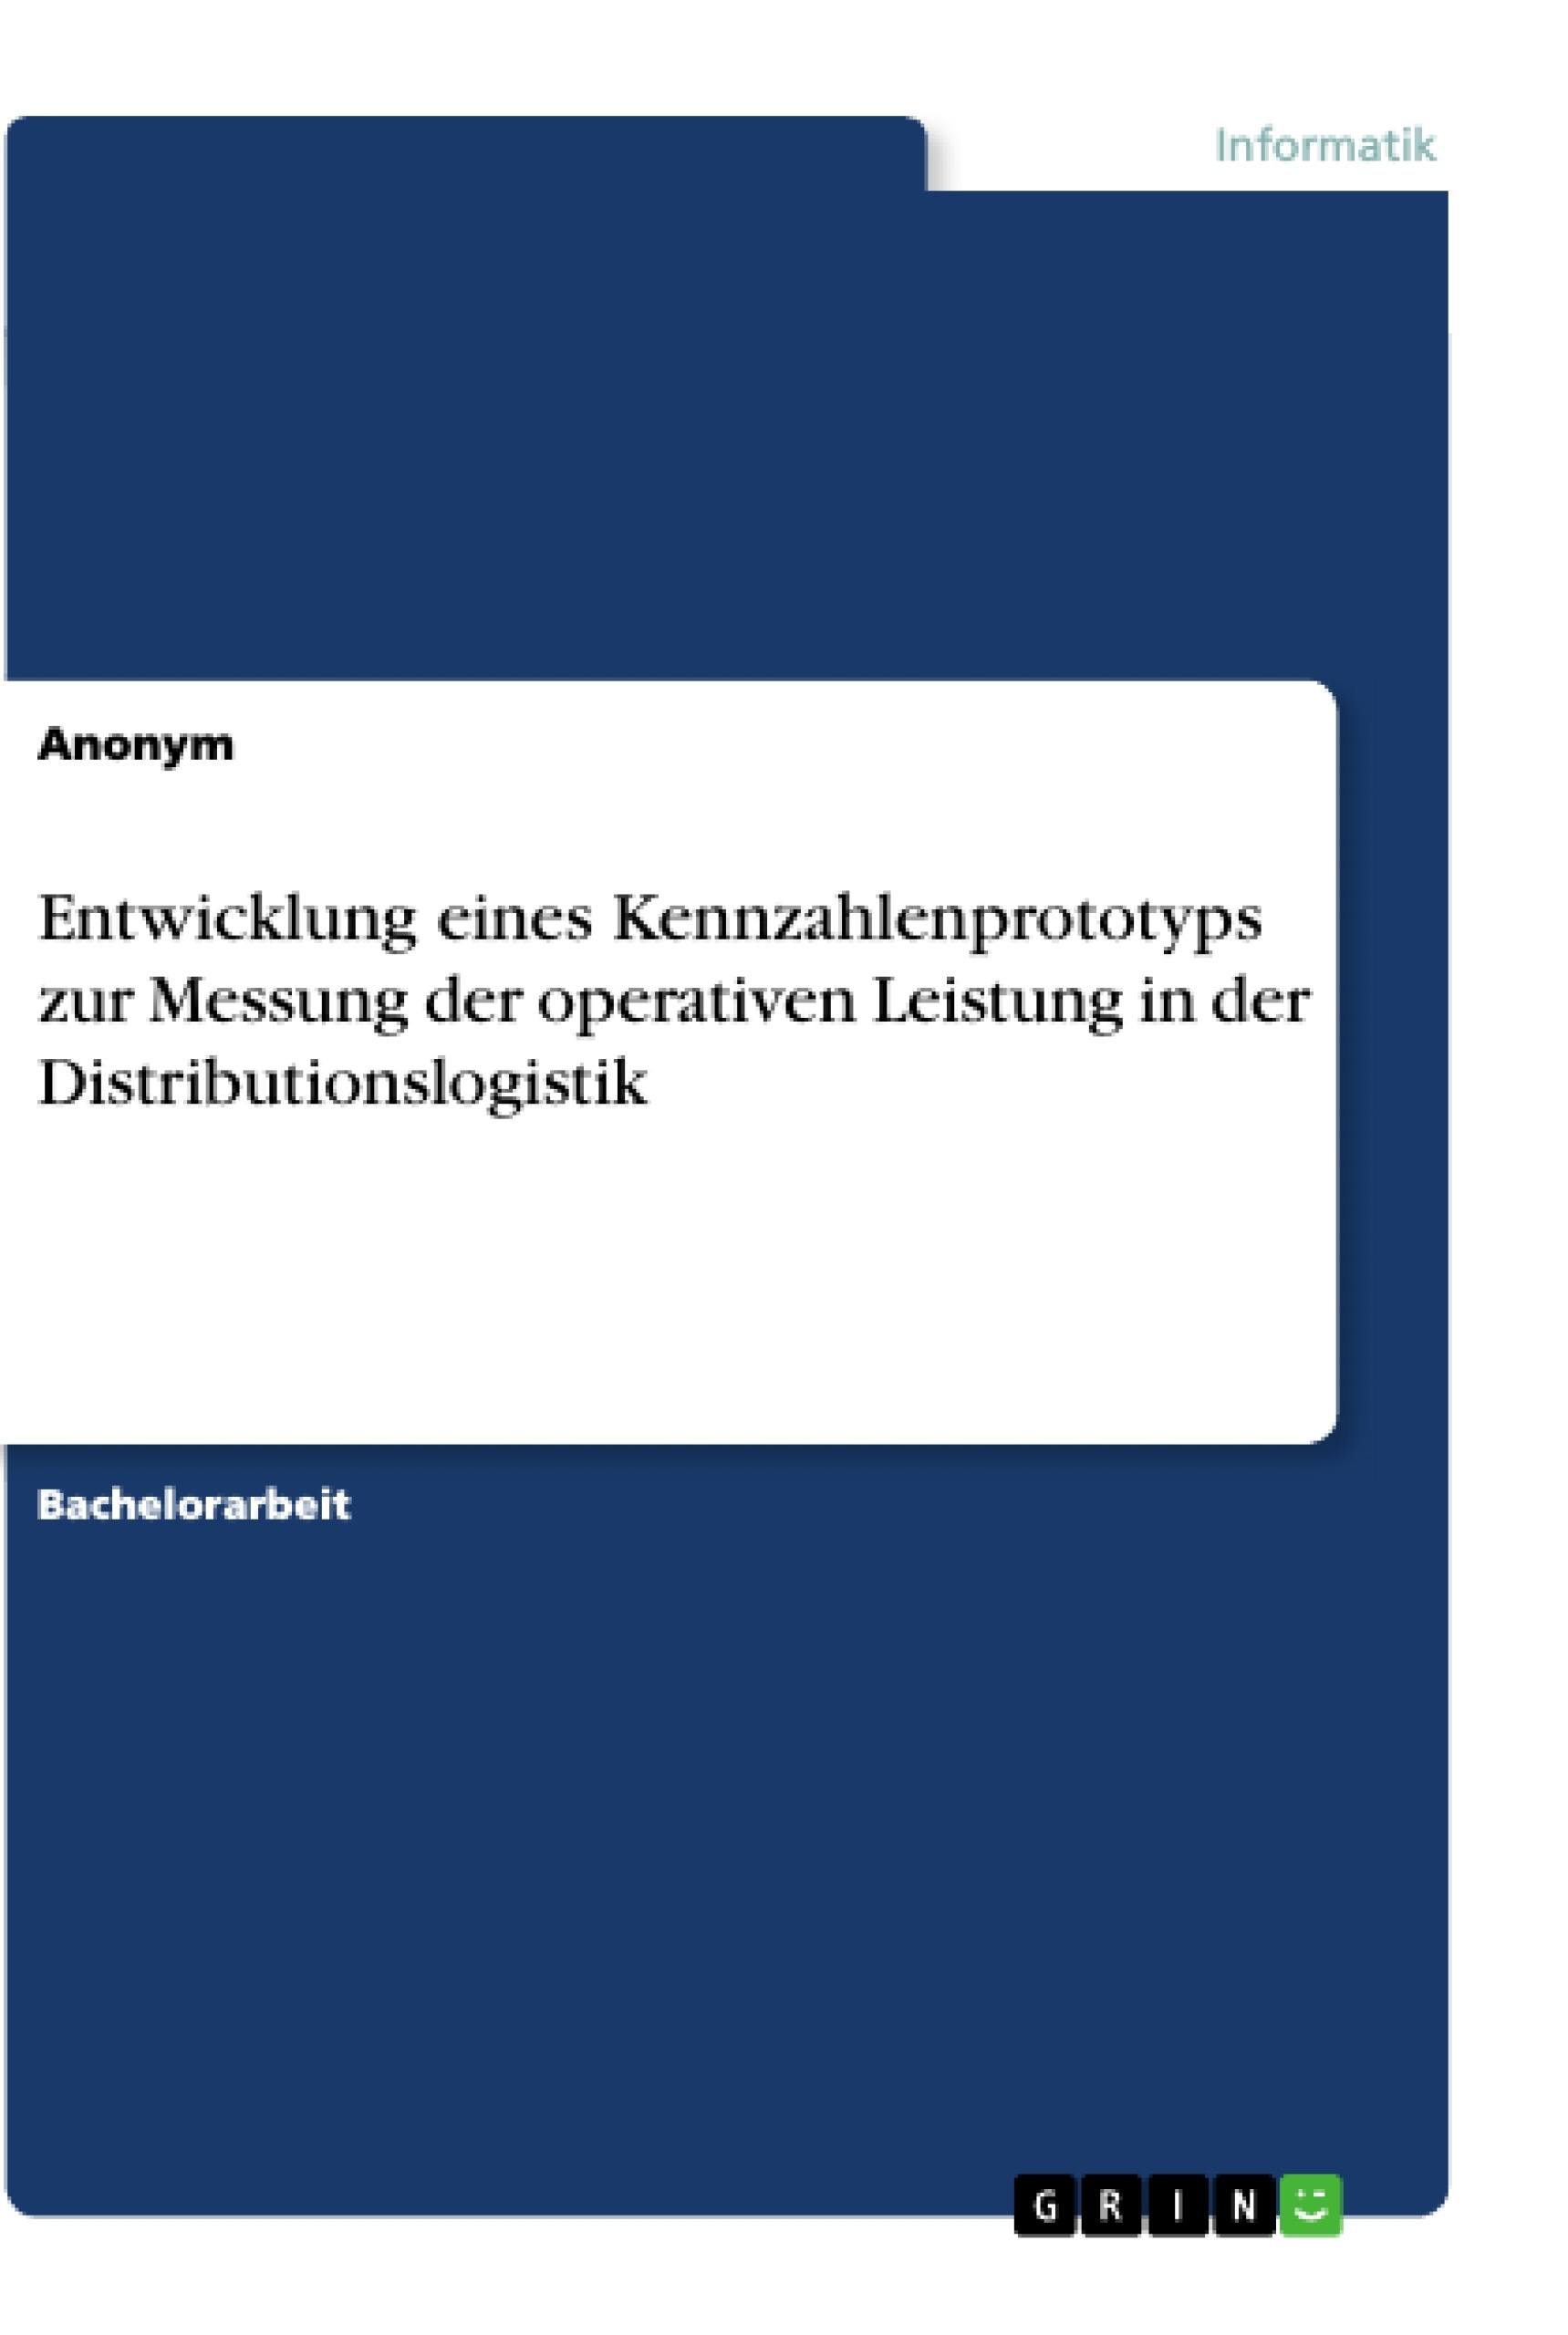 Title: Entwicklung eines Kennzahlenprototyps zur Messung der operativen Leistung in der Distributionslogistik